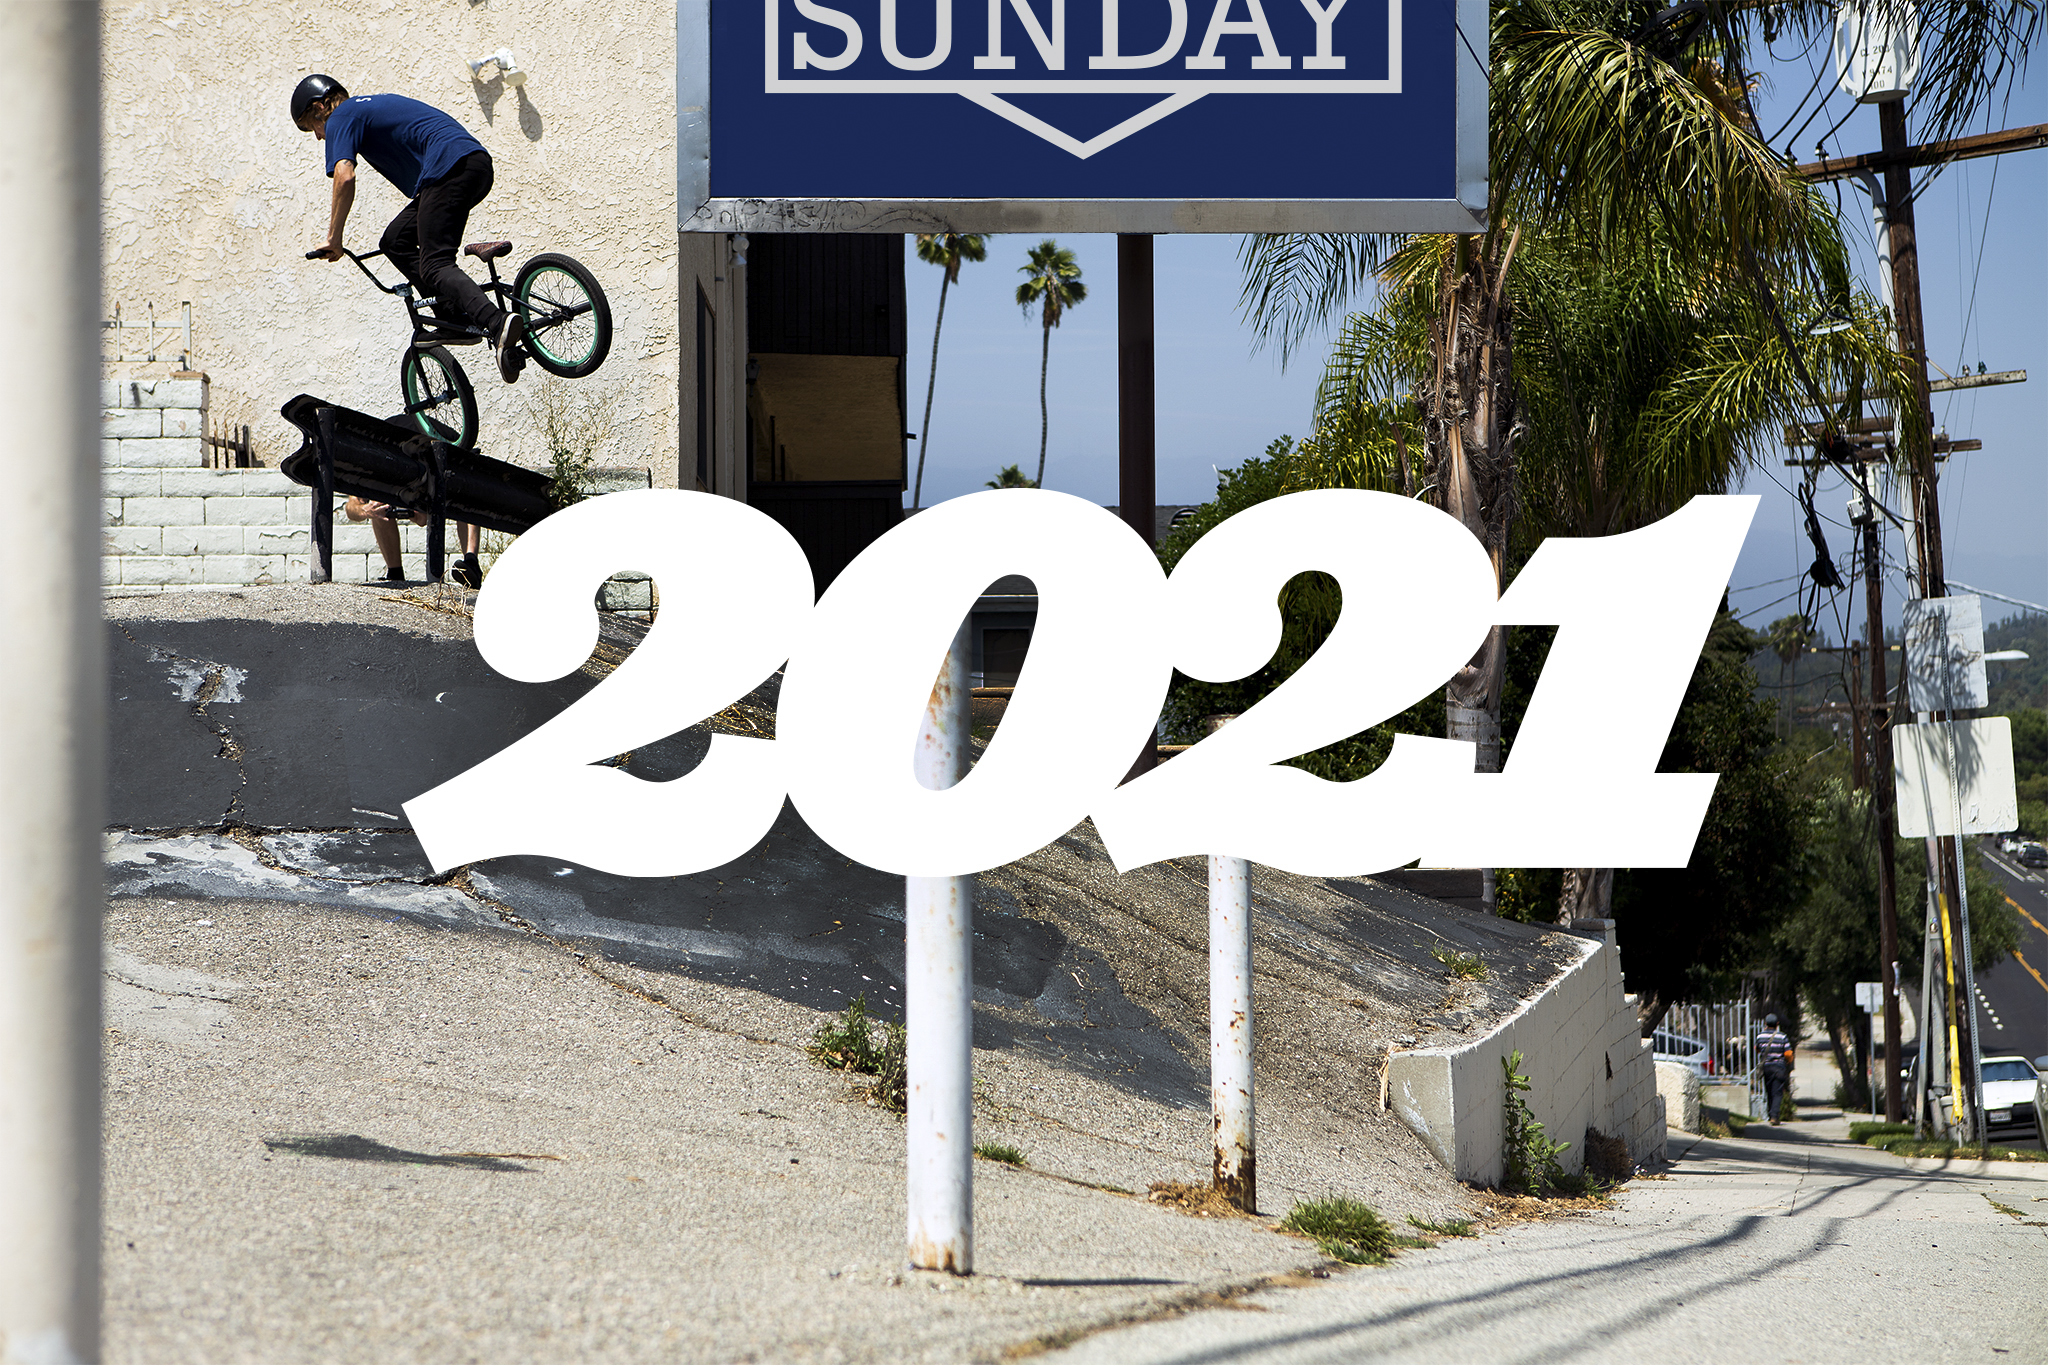 sunday 2021 forecaster bmx bike